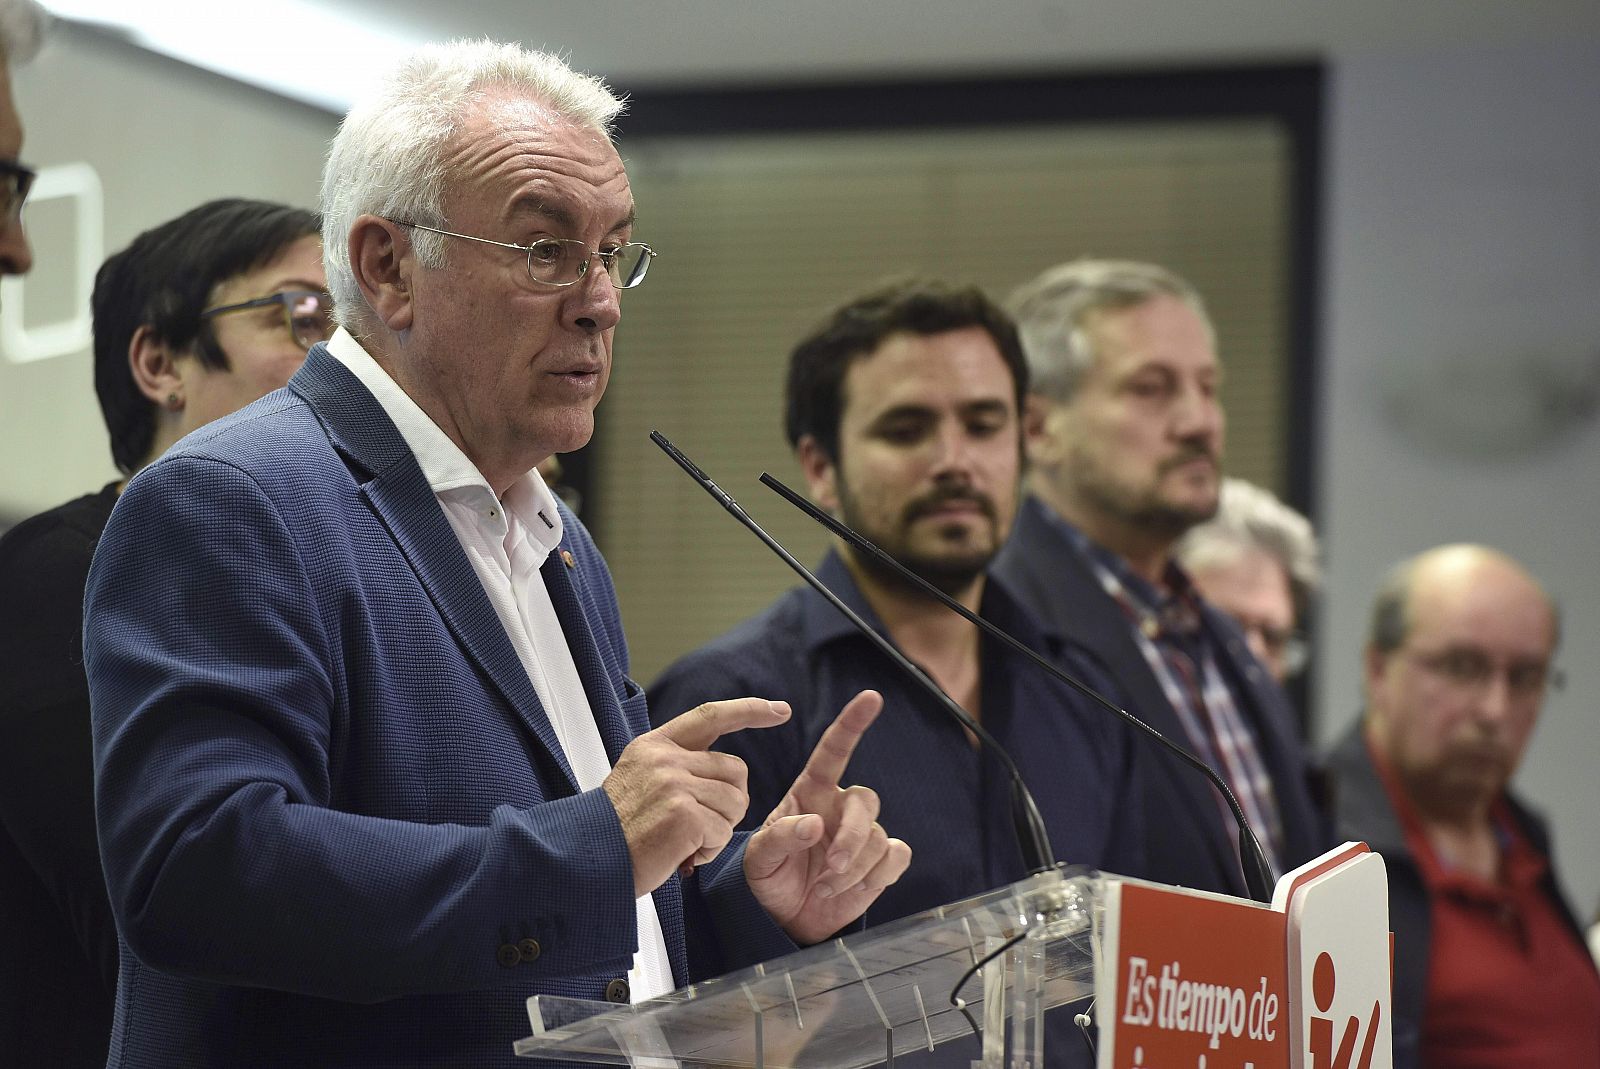 Cayo Lara, coordinador federal de Izquierda Unida, valora los resultados de las elecciones en presencia de Alberto Garzón, candidato de IU a la presidencia del Gobierno.